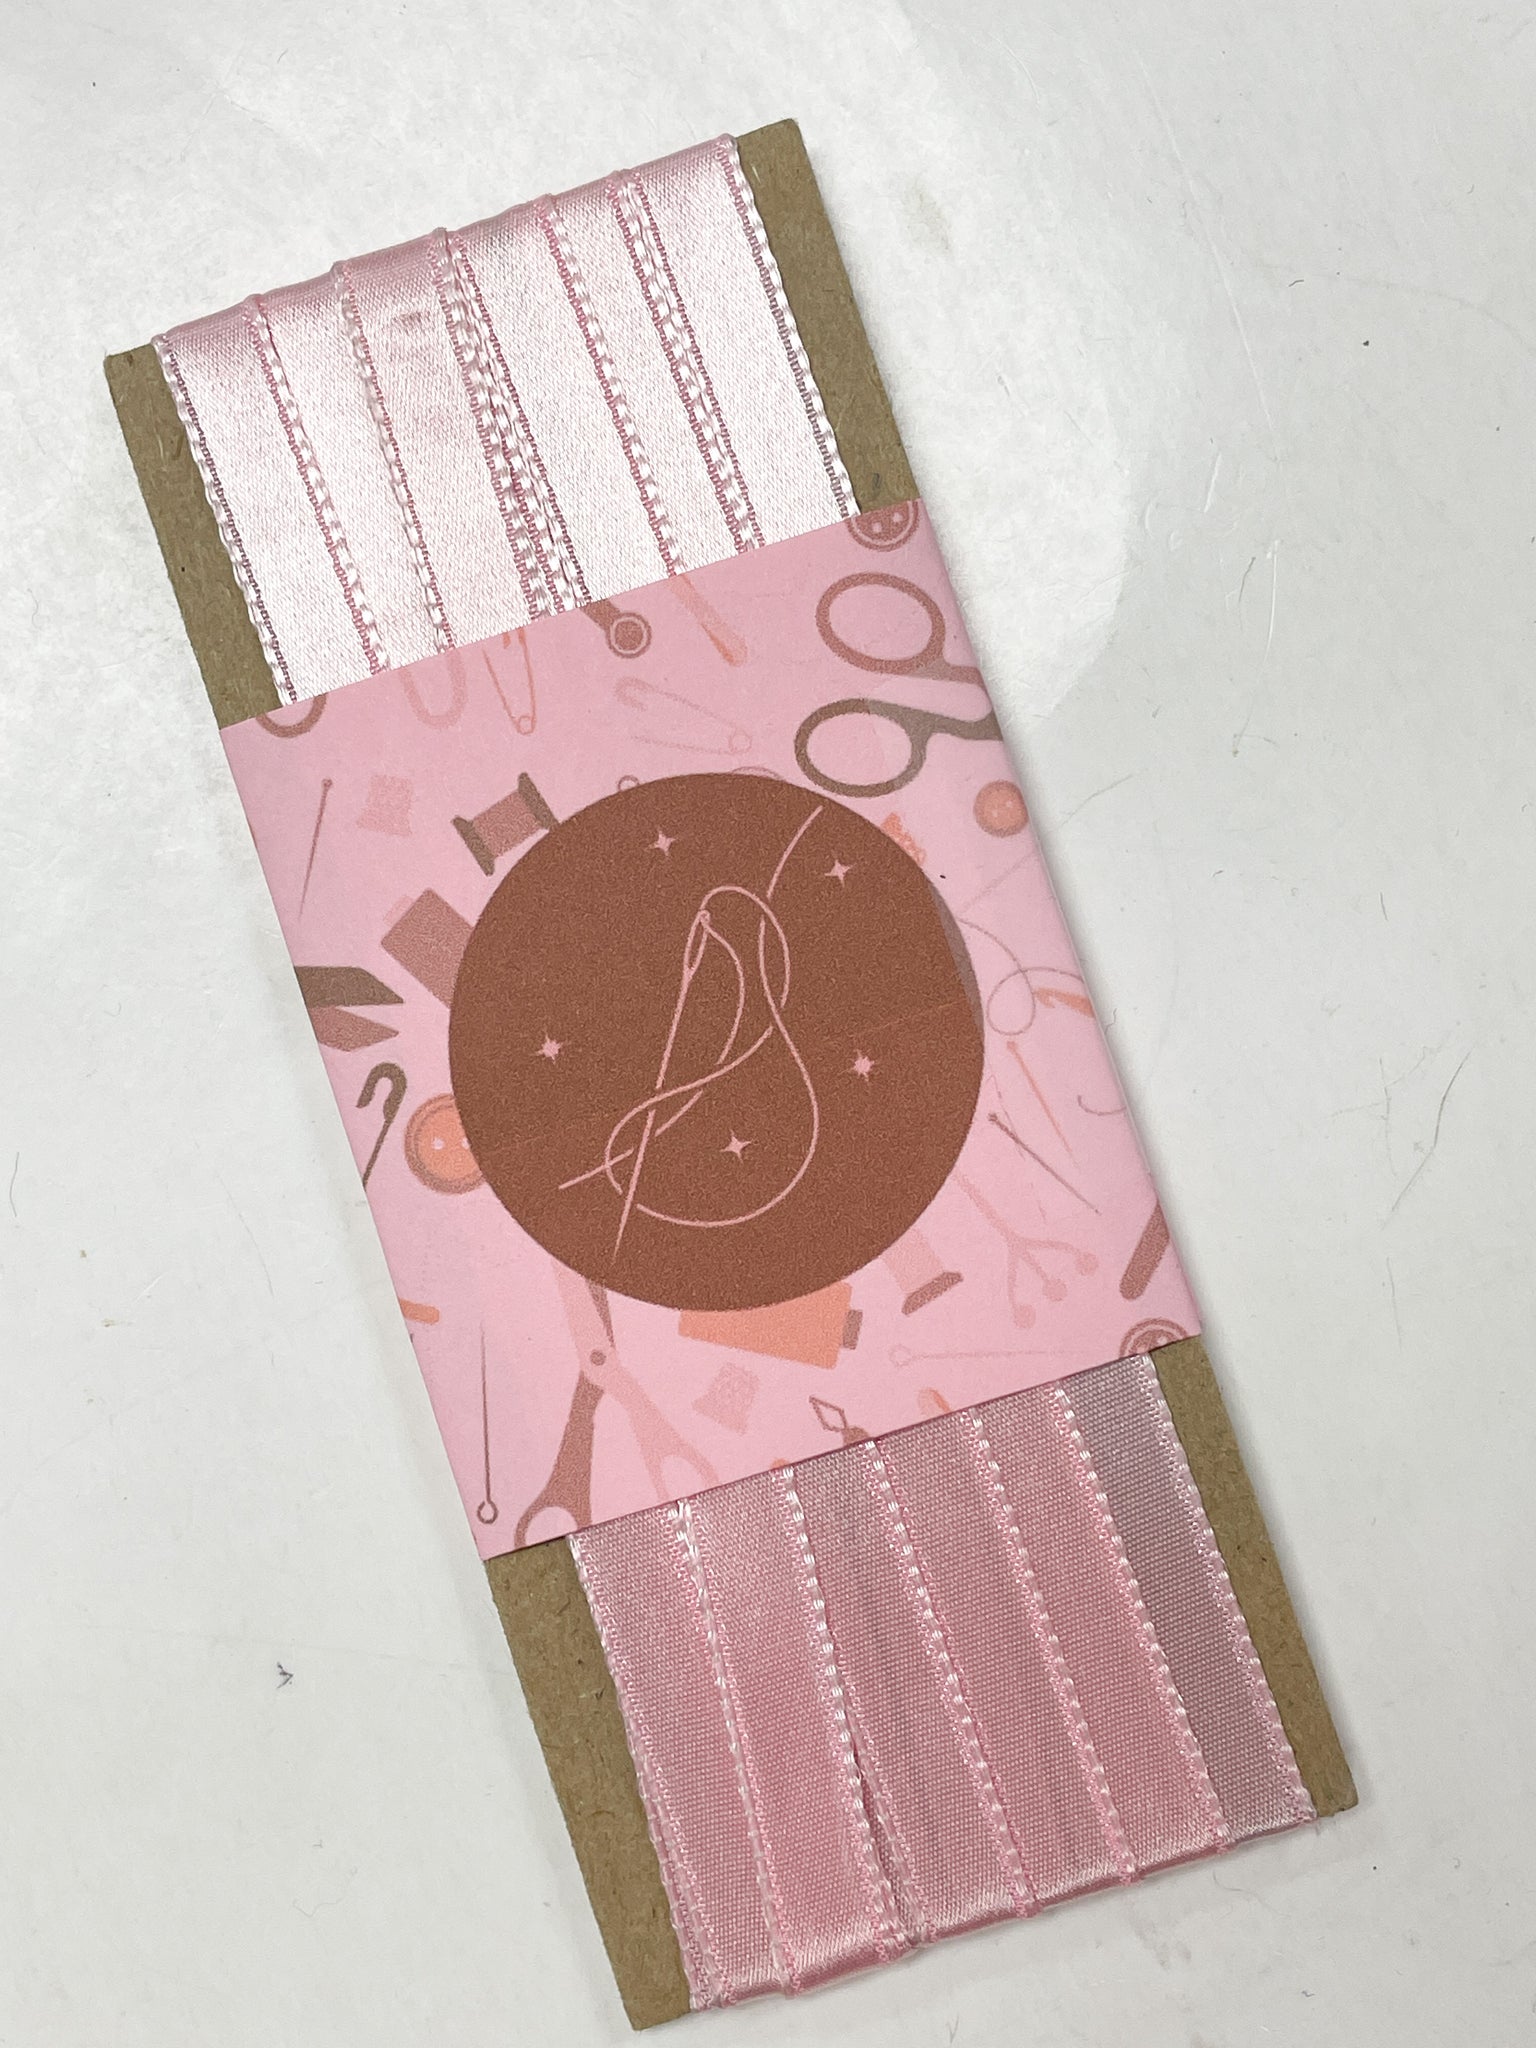 3 3/8 YD Acetate/Rayon Satin Ribbon Vintage - Pink